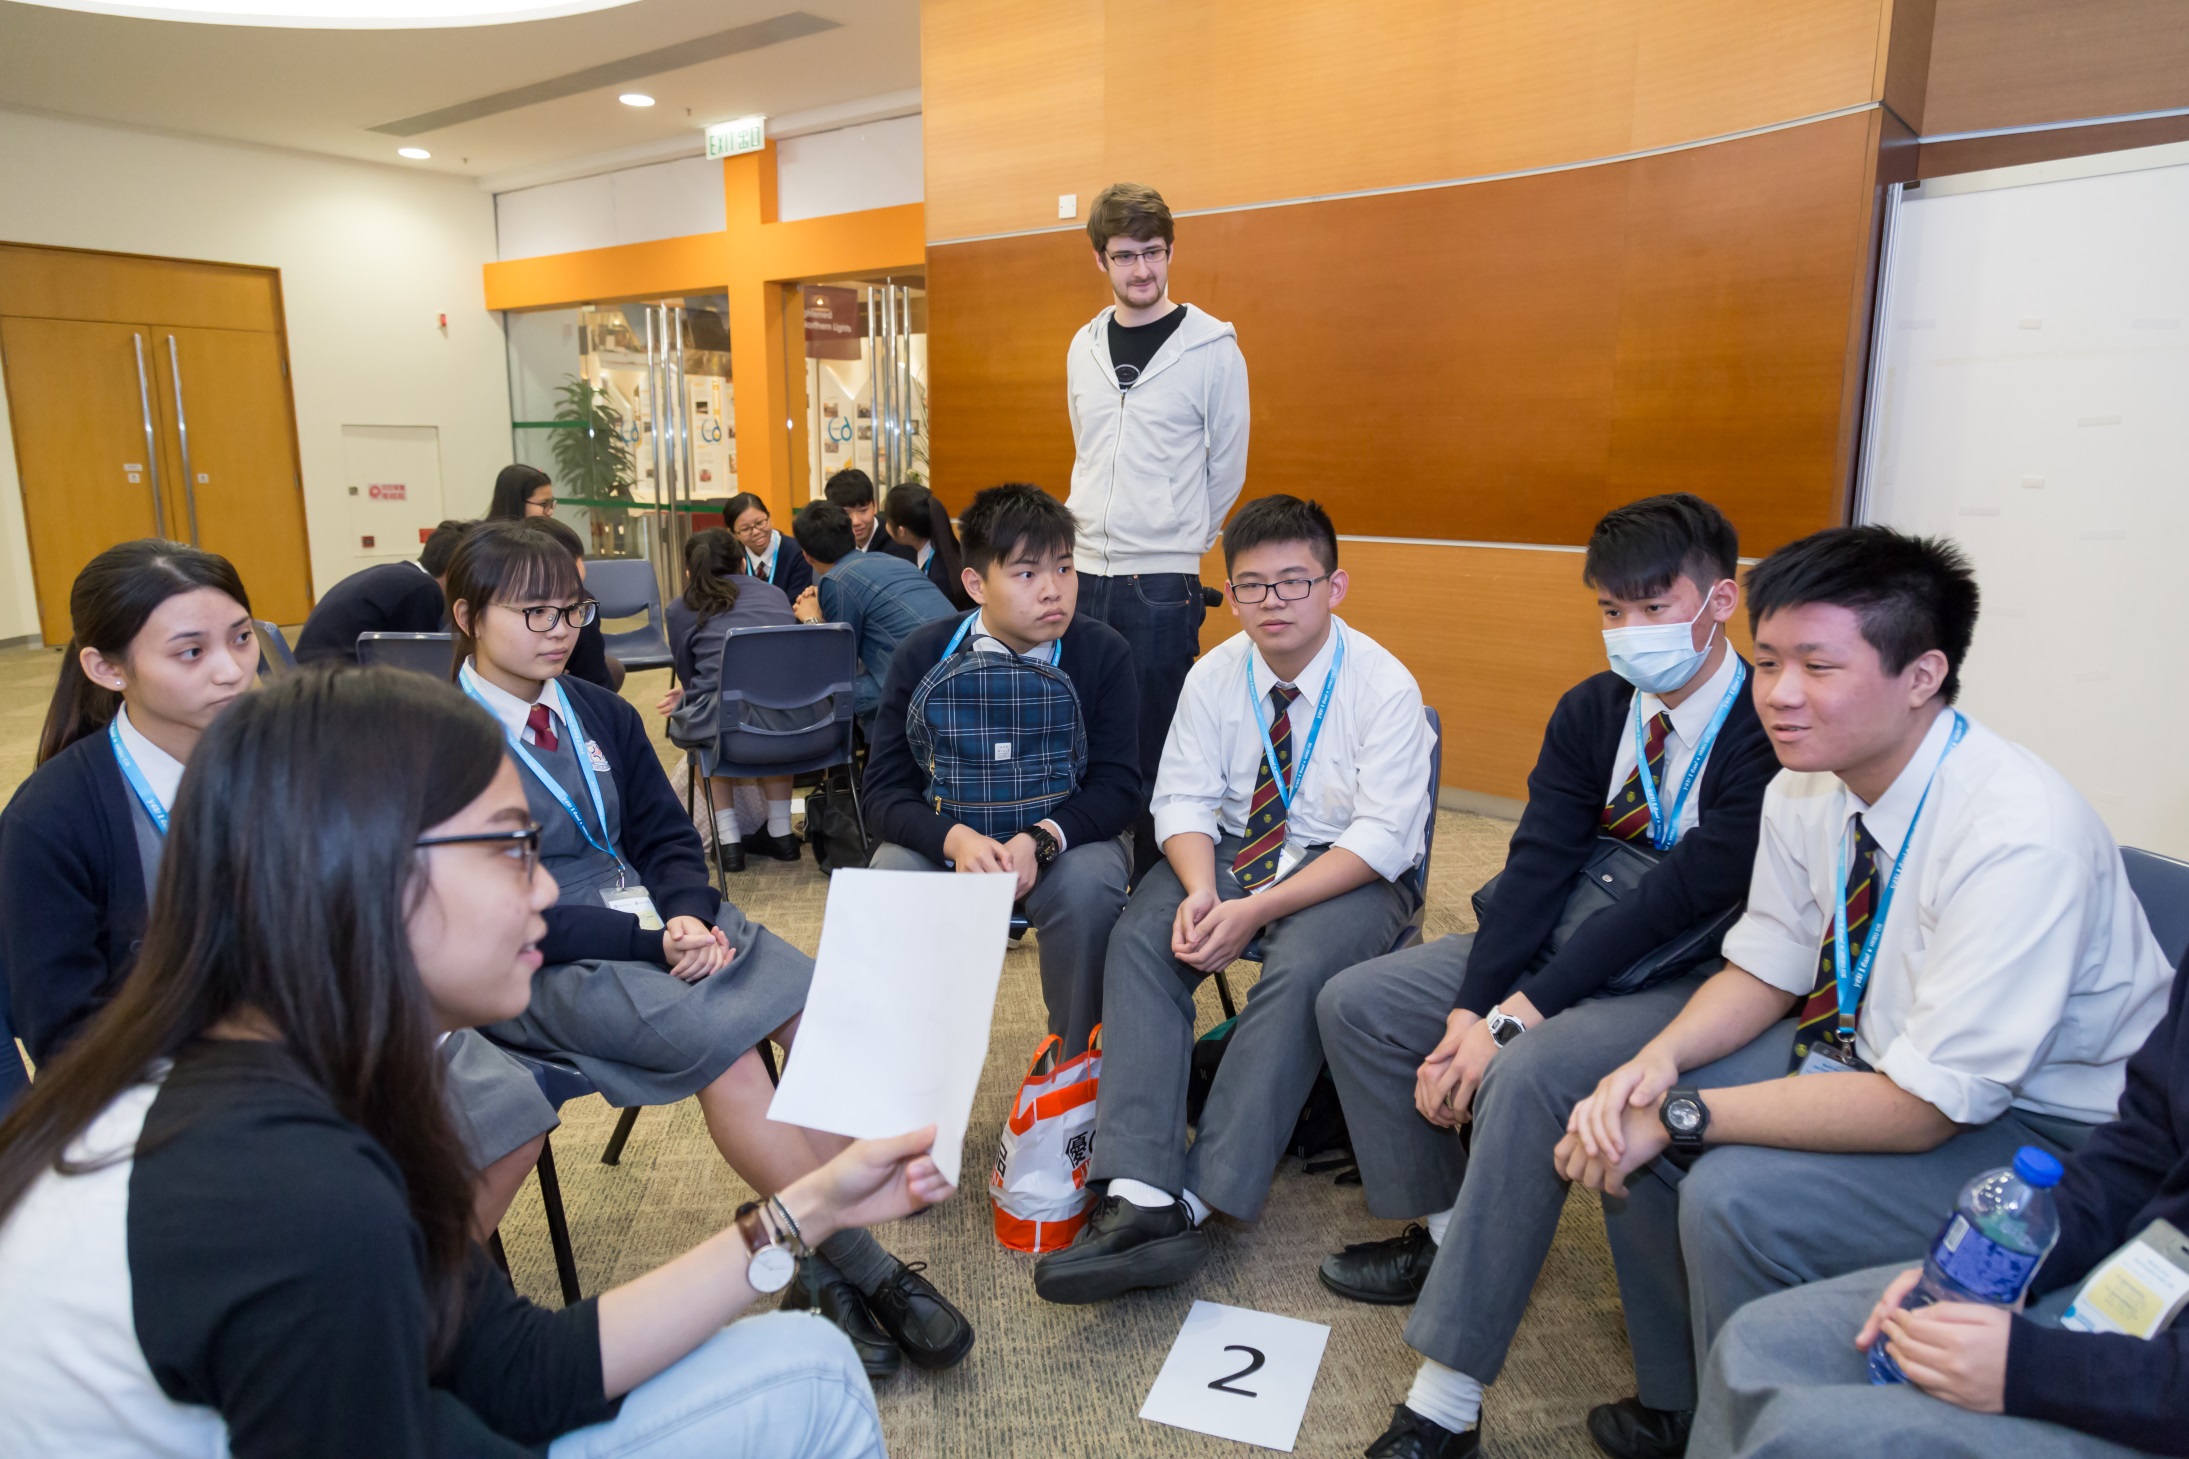 国际学院同学于English Corner活动与中学生轻松交流。